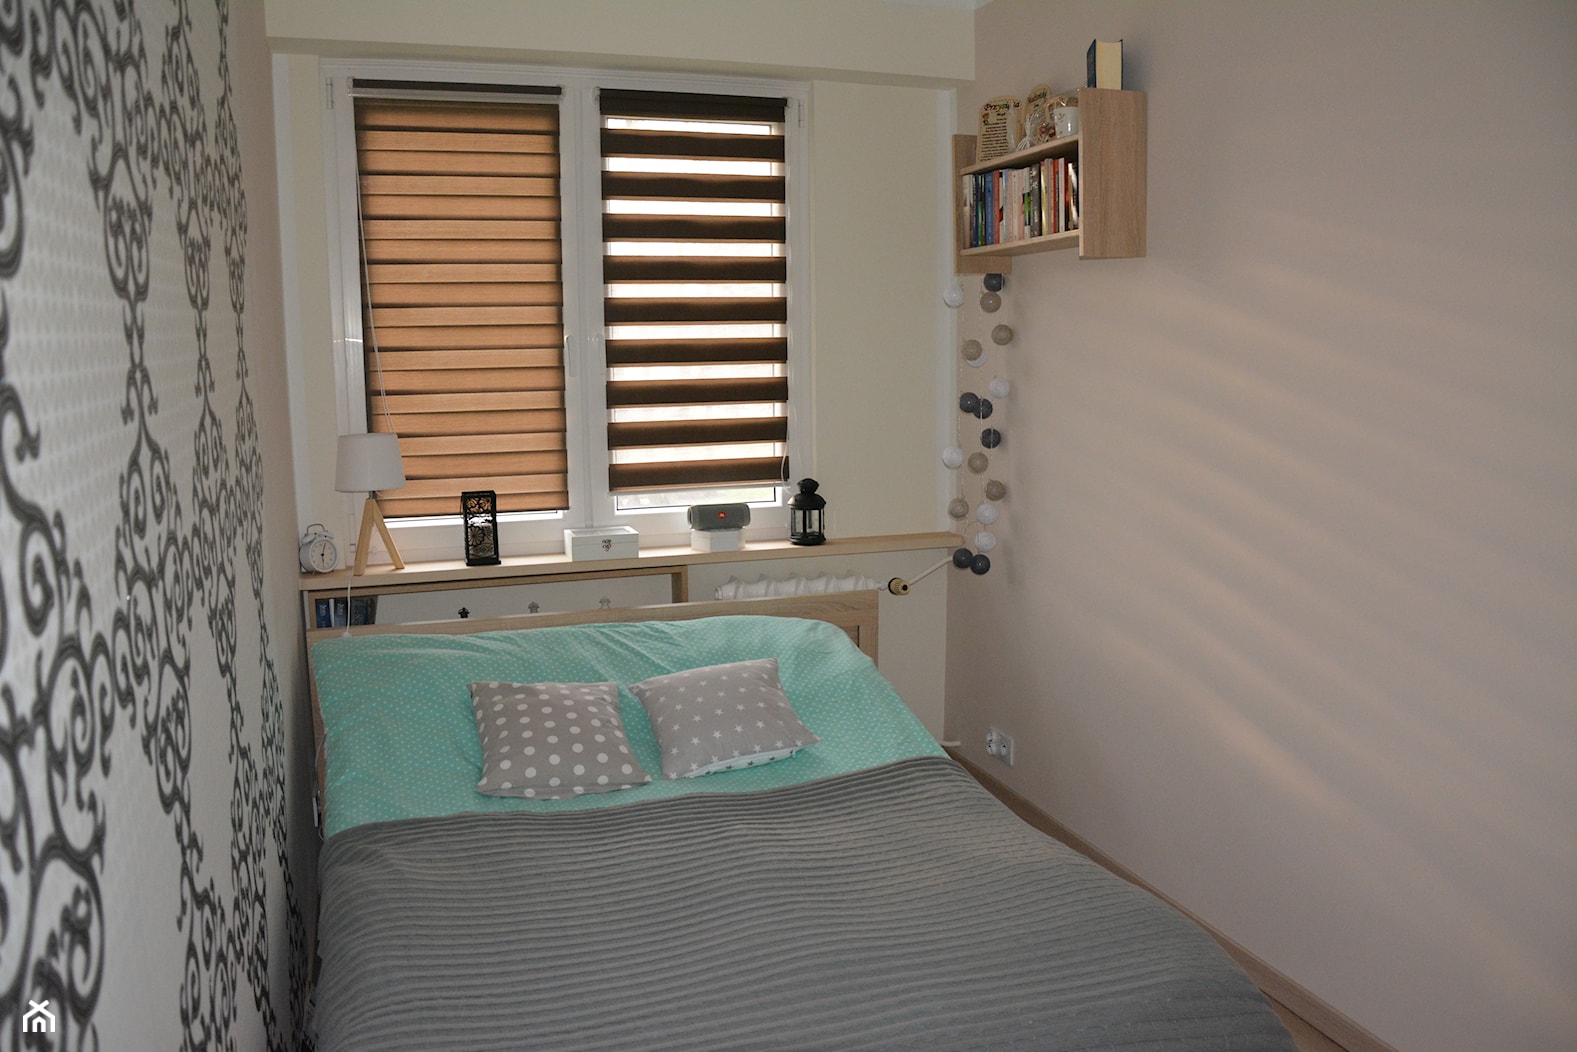 Mieszkanie w wielkiej płycie - spełnione marzenie - Mała biała sypialnia, styl skandynawski - zdjęcie od Natalia Greń 2 - Homebook